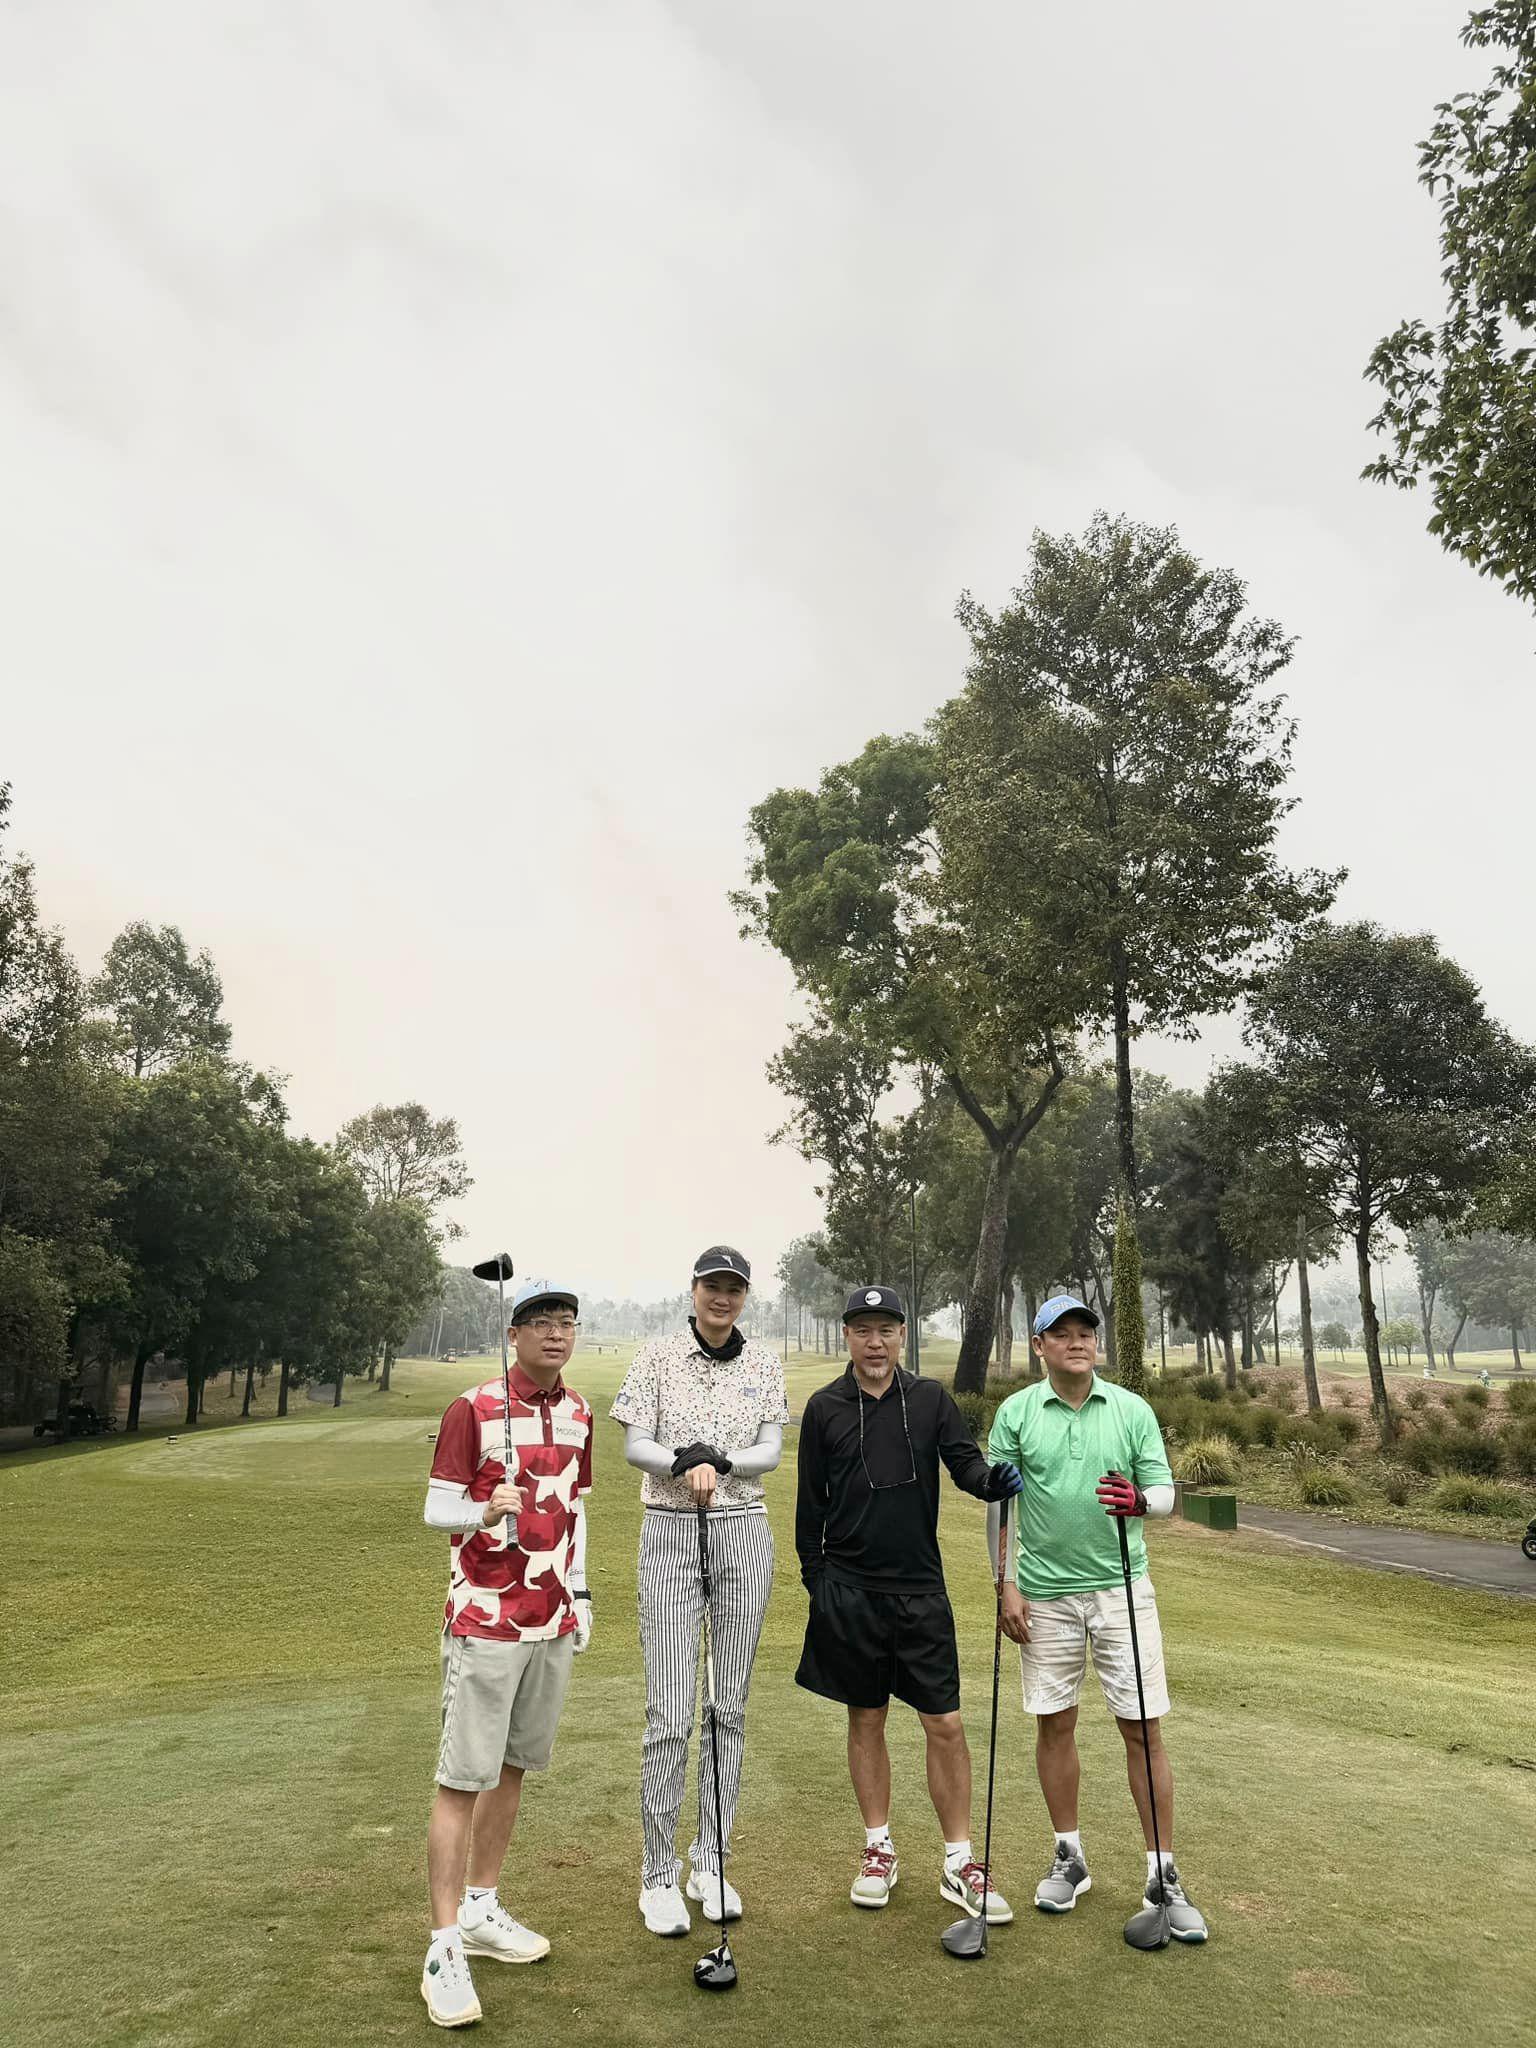 "Hoa khôi" Kim Huệ chăm tập golf sau khi giải nghệ, thân hình 1m82 "lấn át" cánh đàn ông - 1